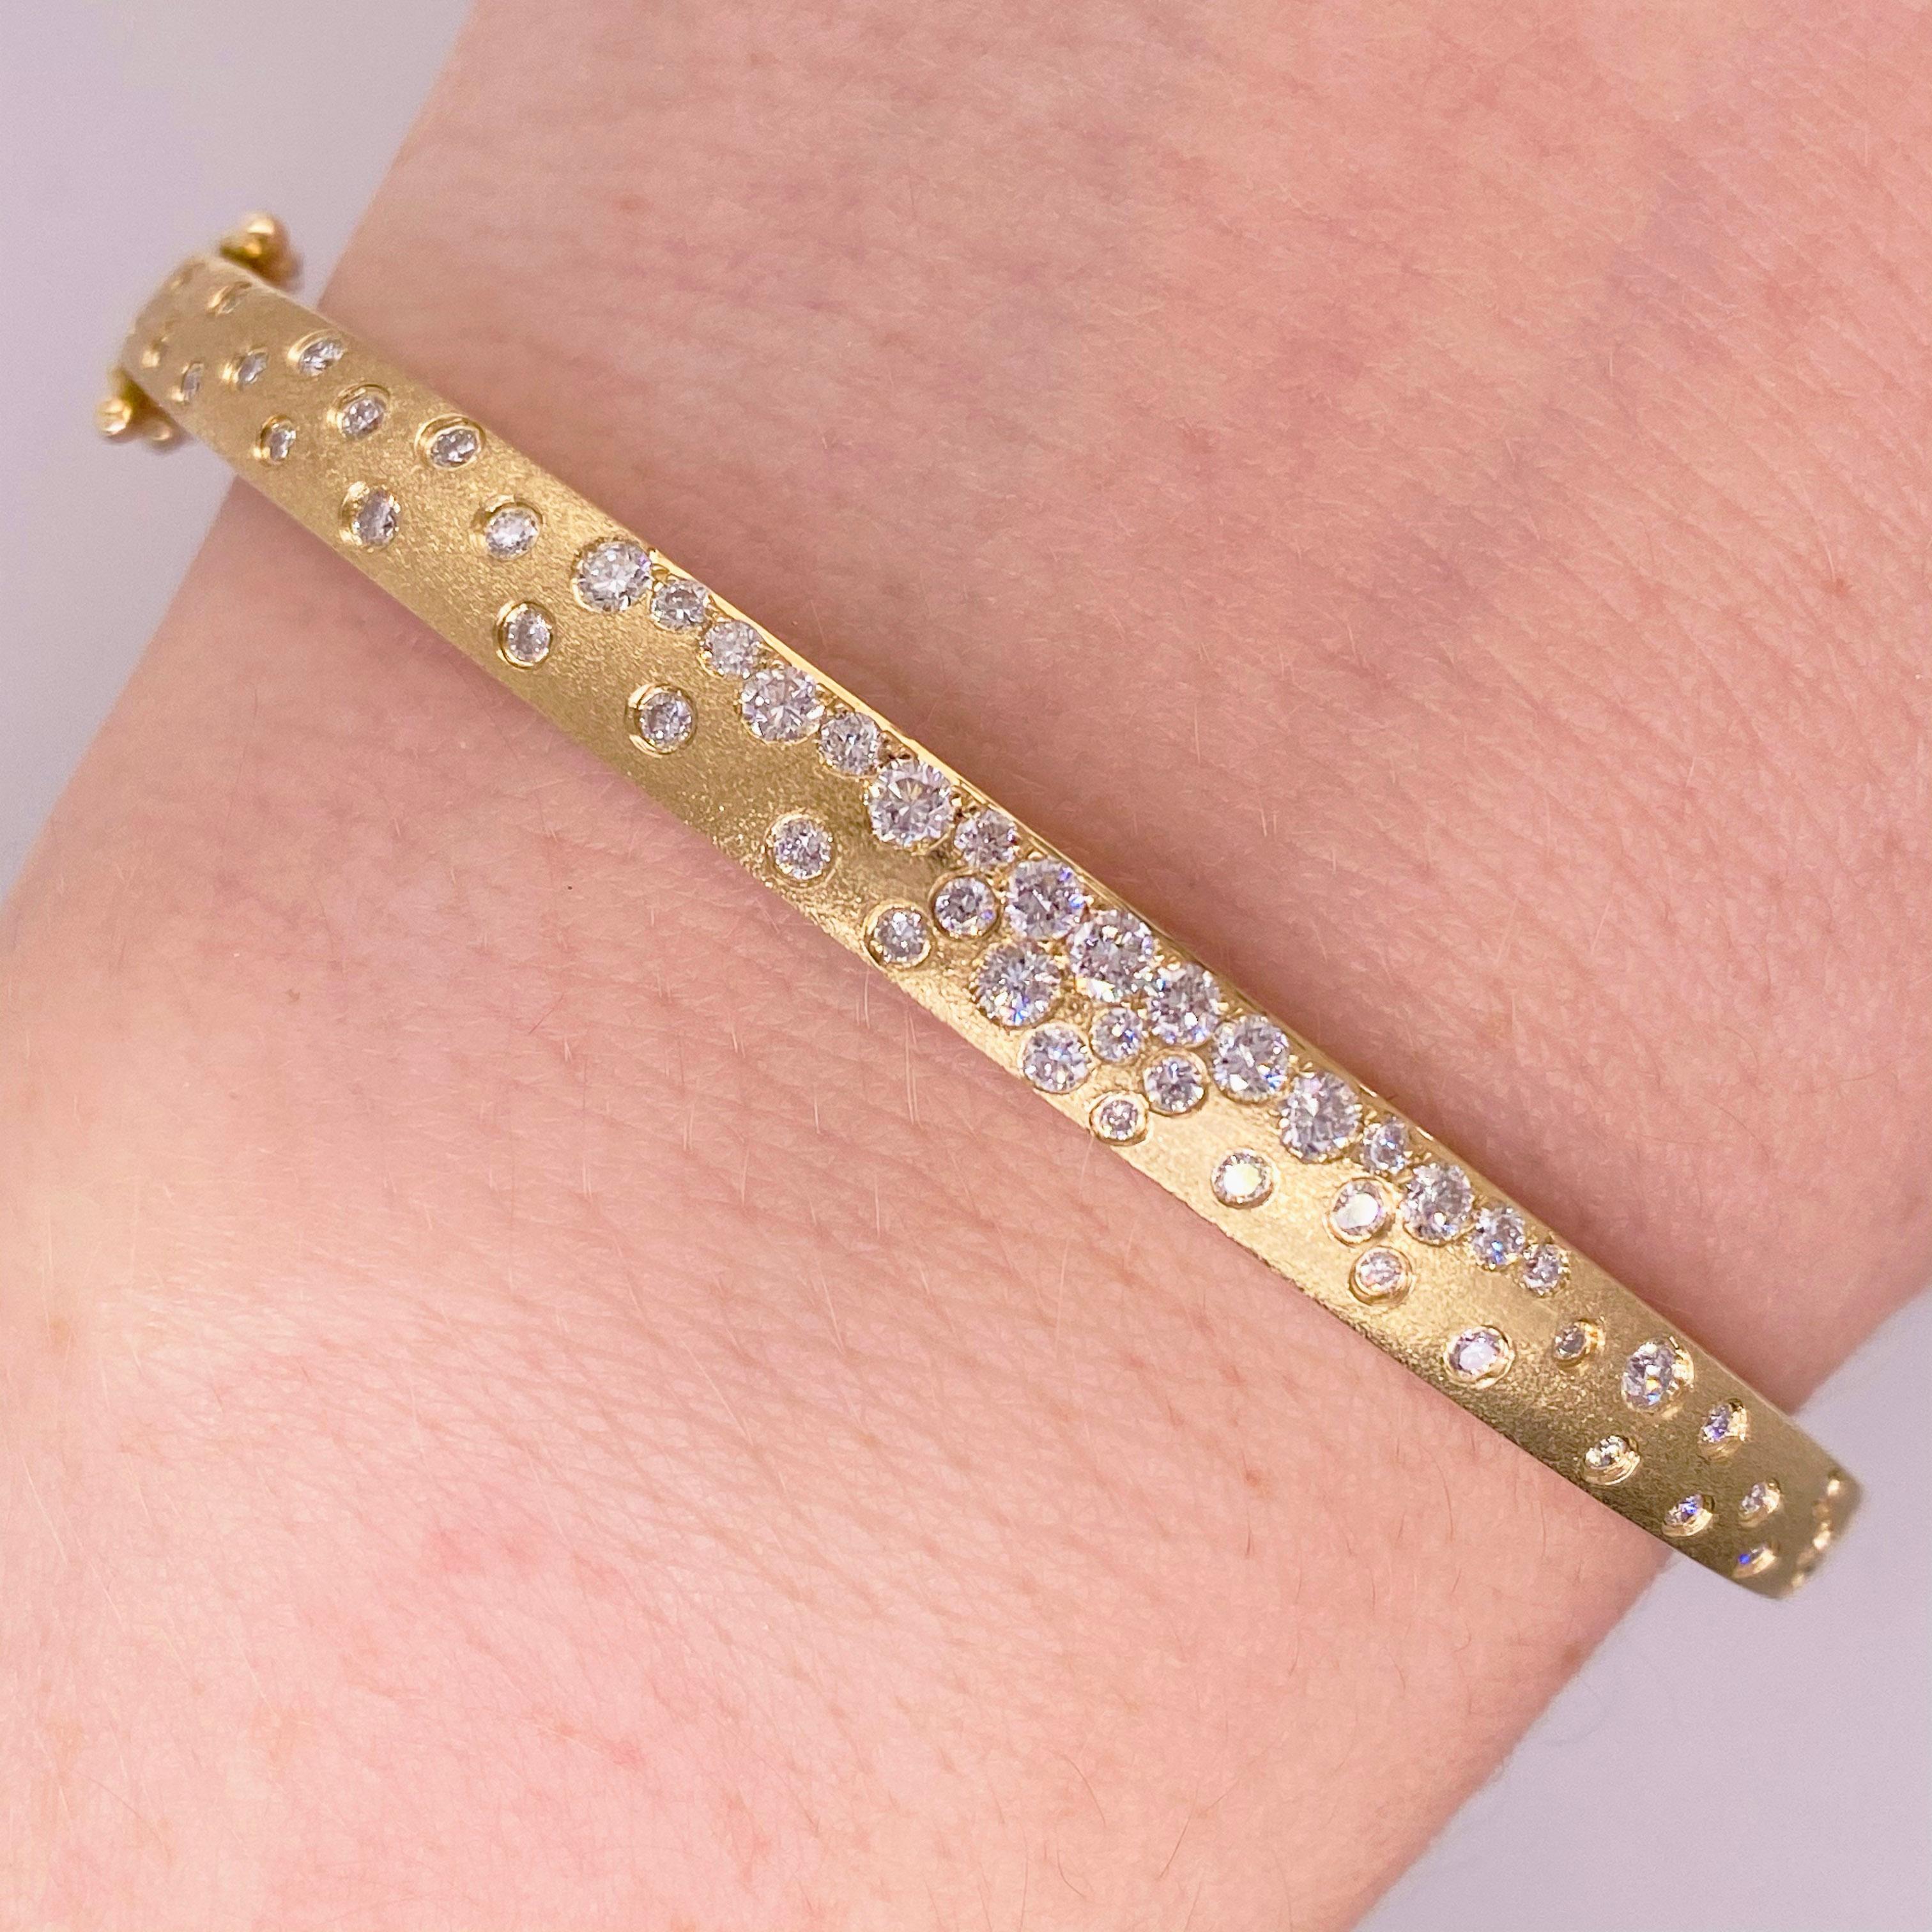 Ce bracelet Galaxy Diamond est en or brossé et les diamants sont sertis à fleur de peau.  Le bracelet comporte 0,83 carats de diamants blancs brillants sertis dans de l'or jaune 14 carats brossé ! Cette pièce unique est un joli complément à toute